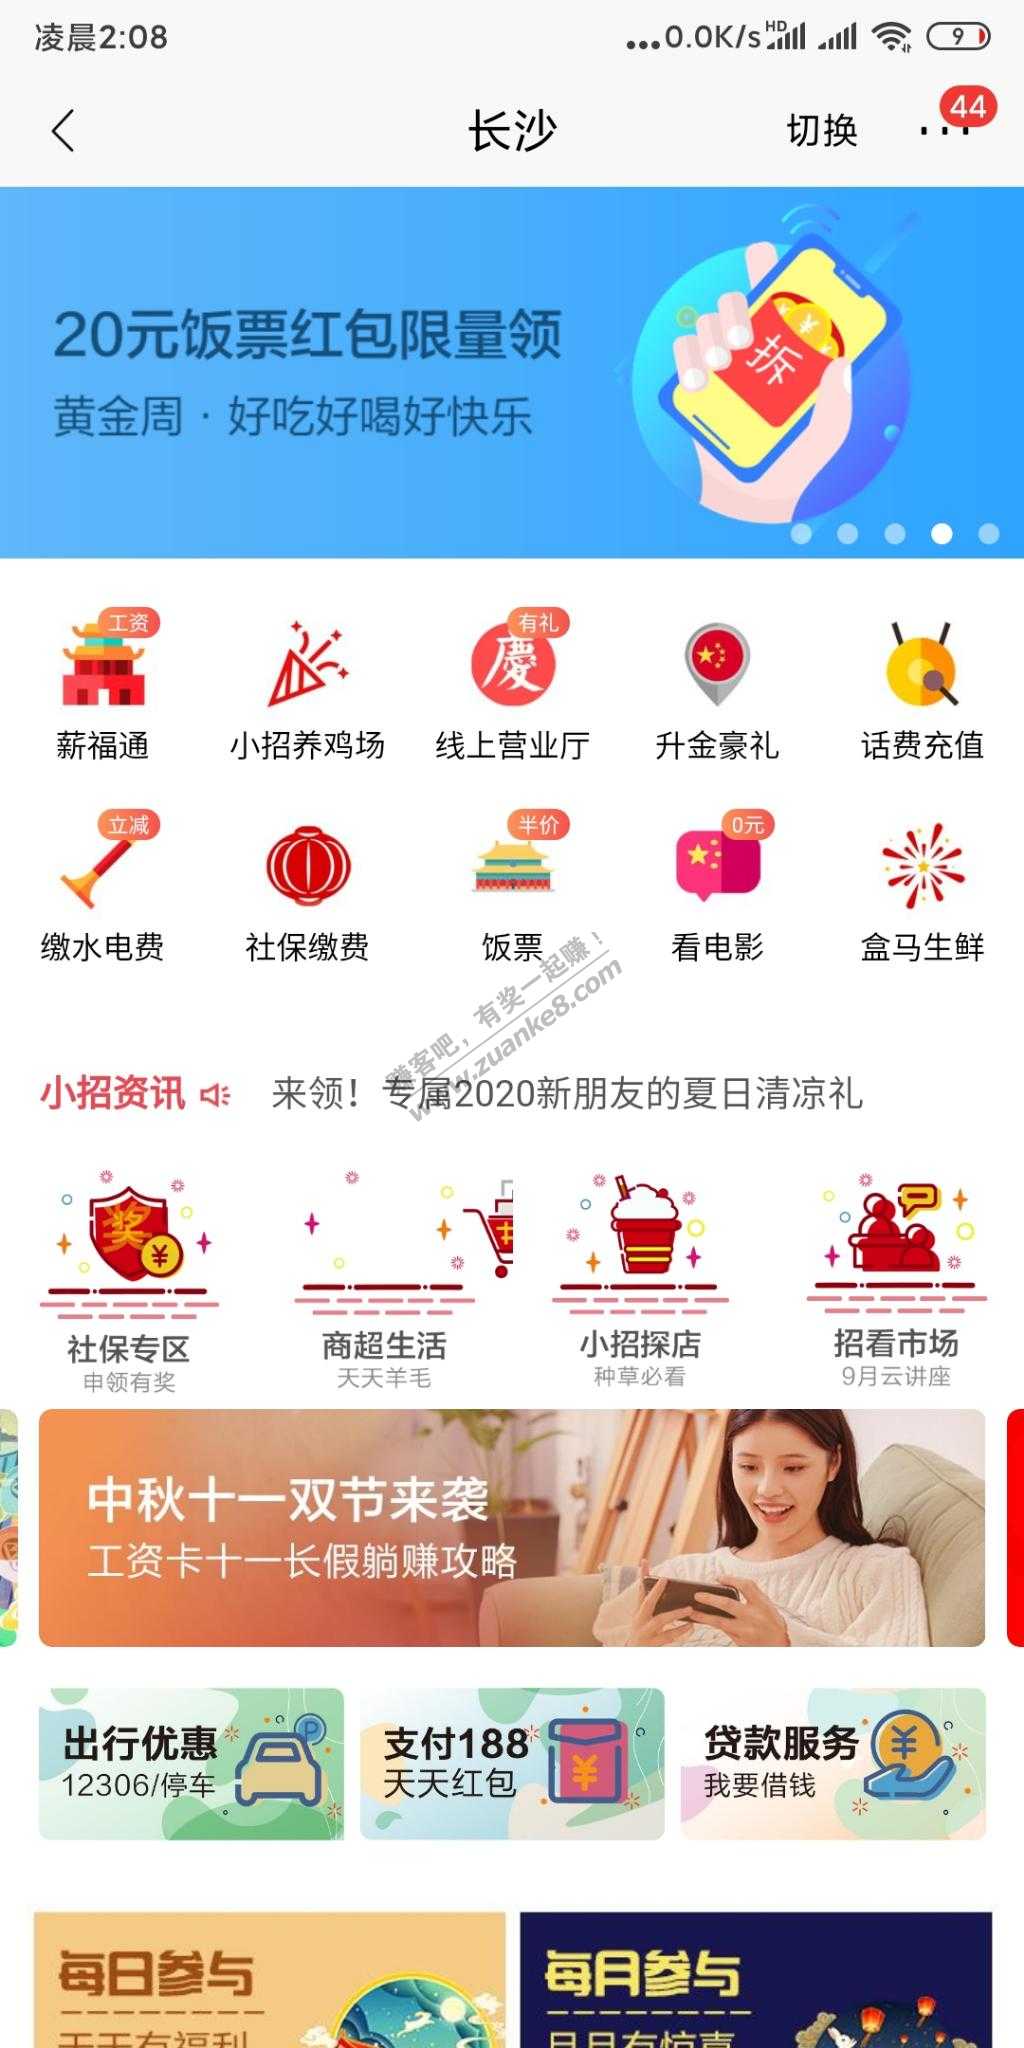 招商长沙领20饭票-惠小助(52huixz.com)